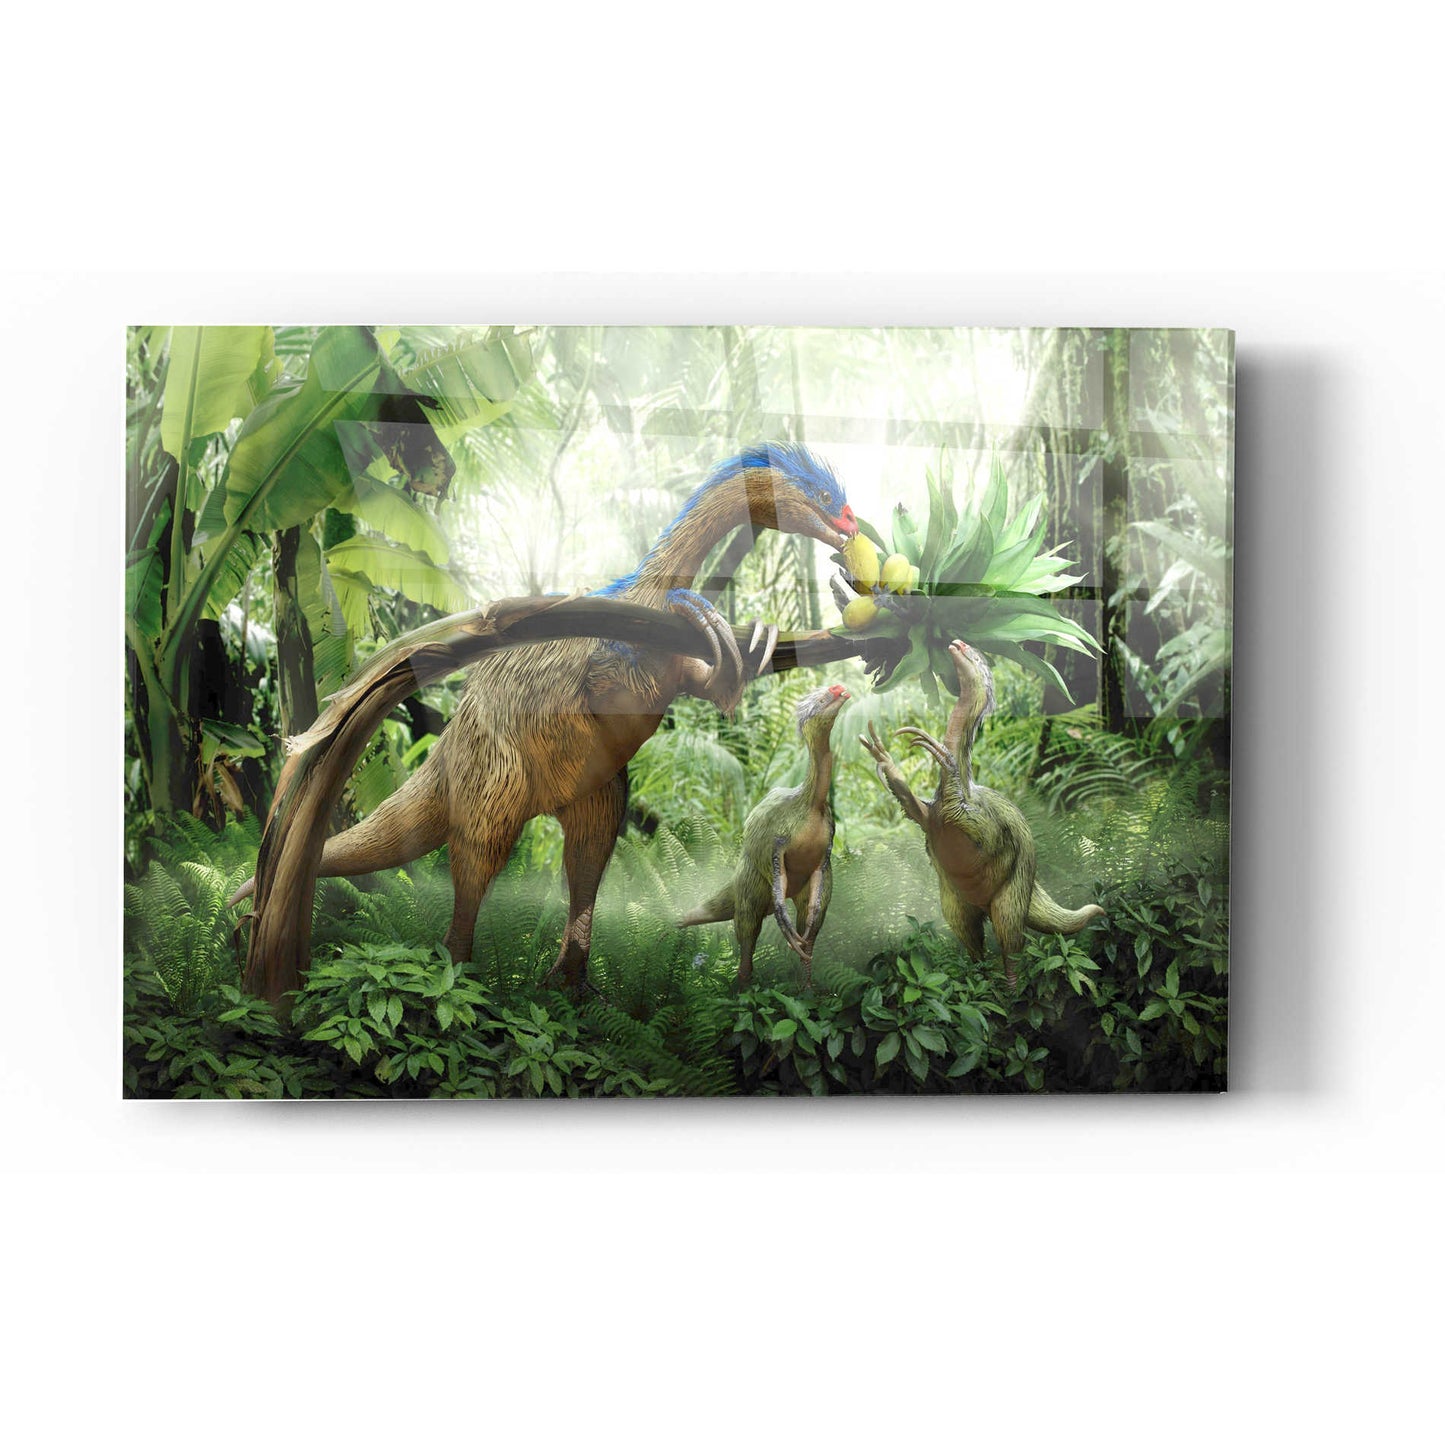 Epic Art 'Therizinosaurus' Acrylic Glass Wall Art,12x16